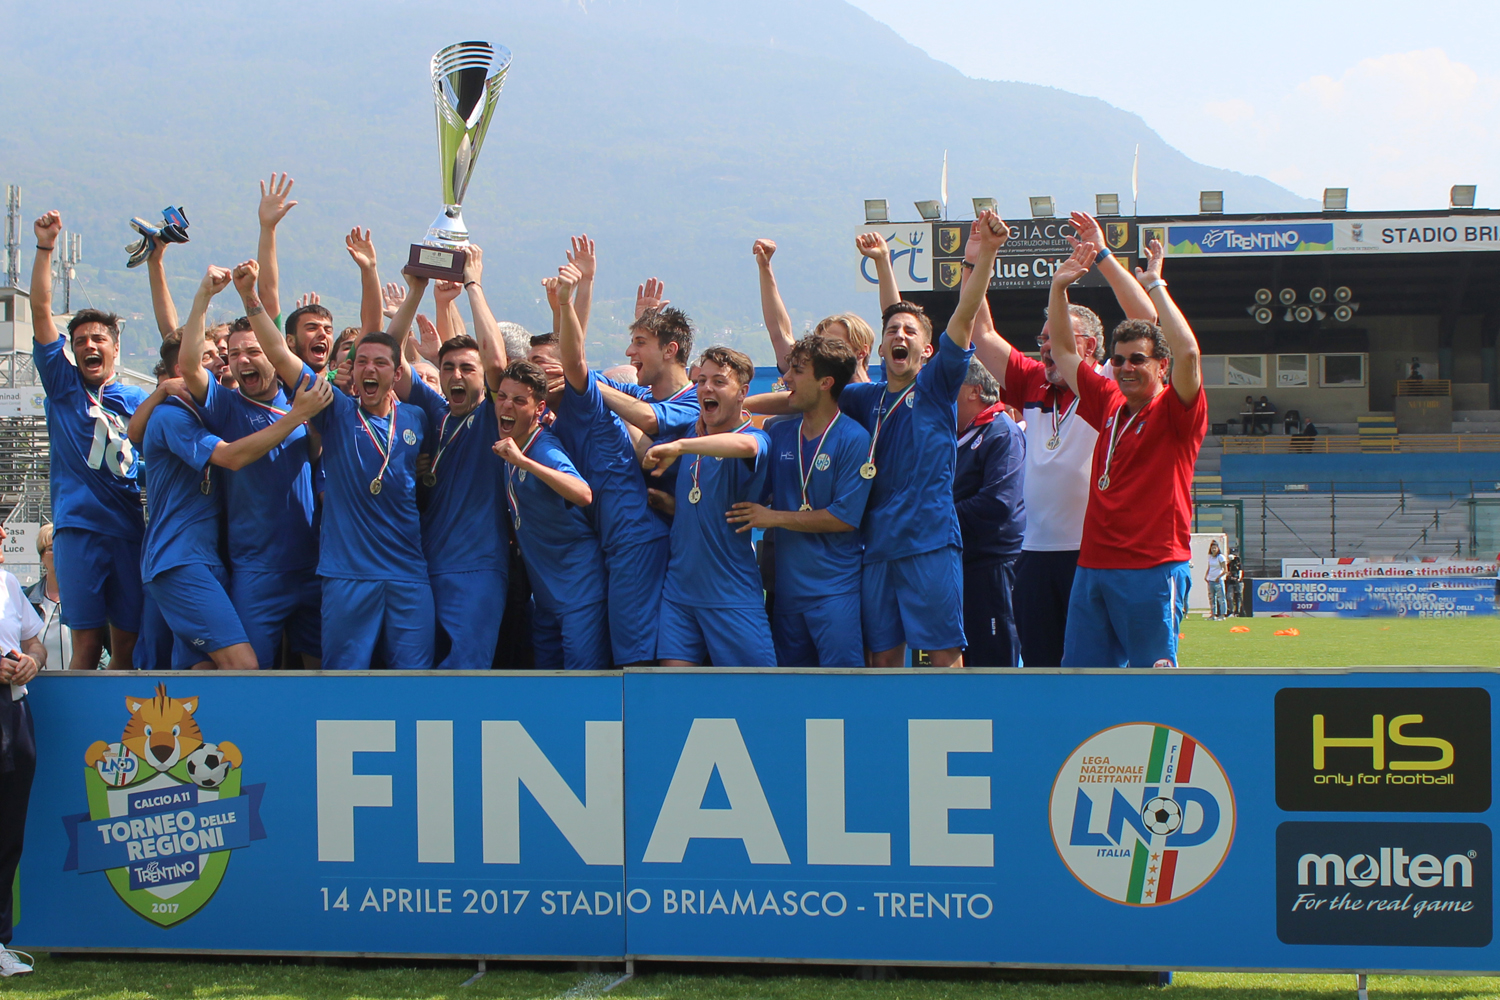 Torneo delle Regioni, il riepilogo: tris Toscana, il Lazio trionfa negli Allievi